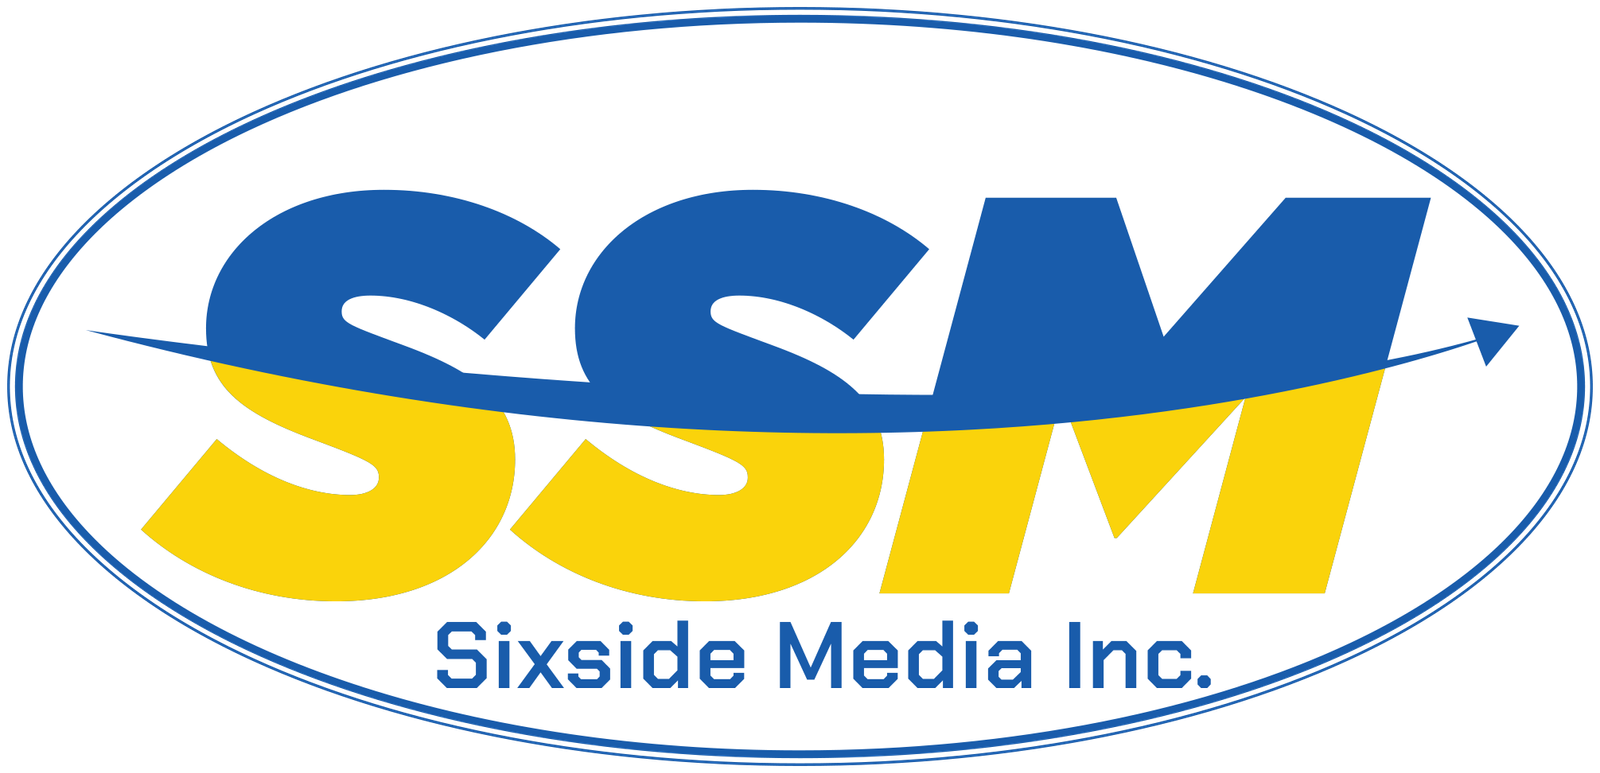 Sixside Media